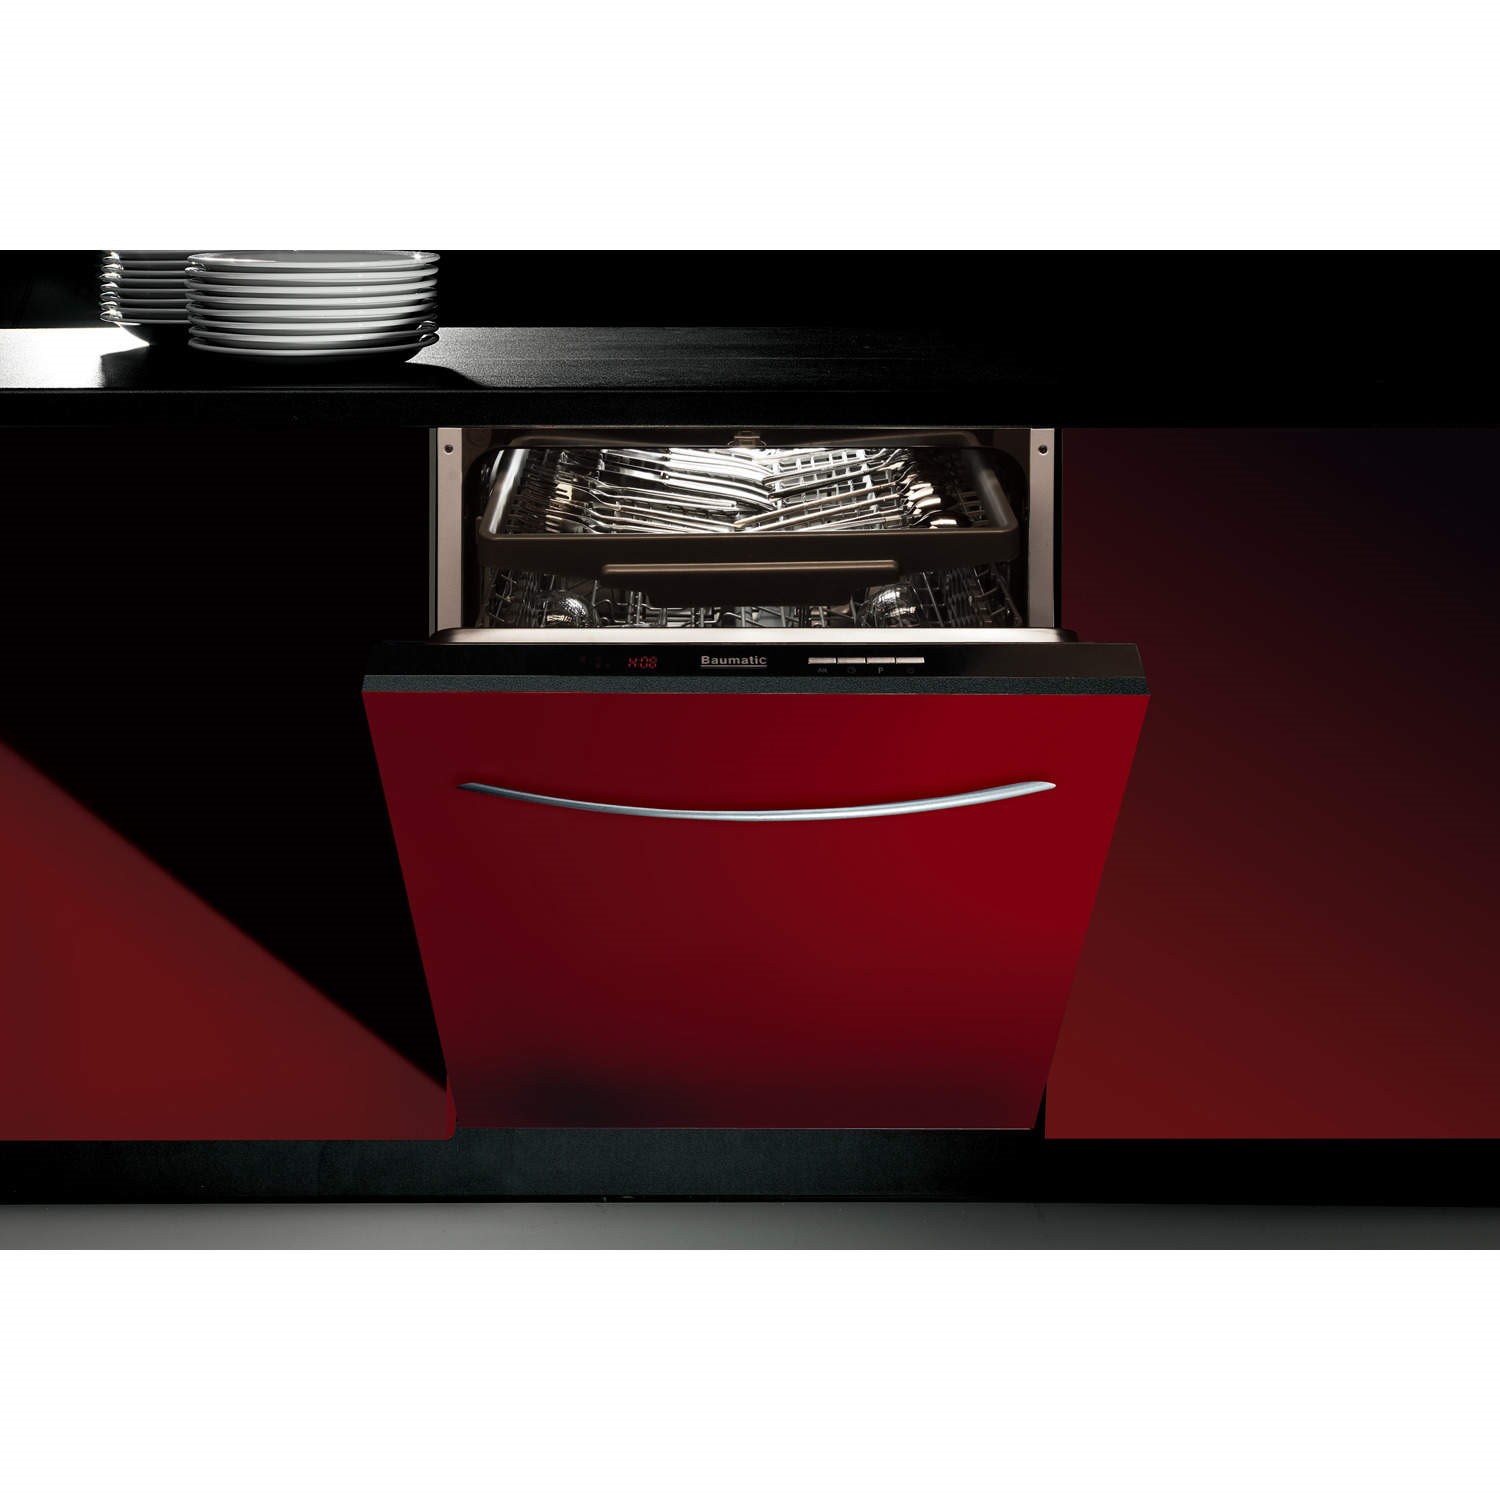 Посудомоечная машина 60 см встраиваемая рейтинг лучших. Посудомоечная машина Baumatic tg5. Встраиваемая посудомоечная машина 60 см AKPO 18002. Встраиваемая посудомоечная машина 60 cm smv8hcx10r. Встраиваемая машина посудомойка 60 см.